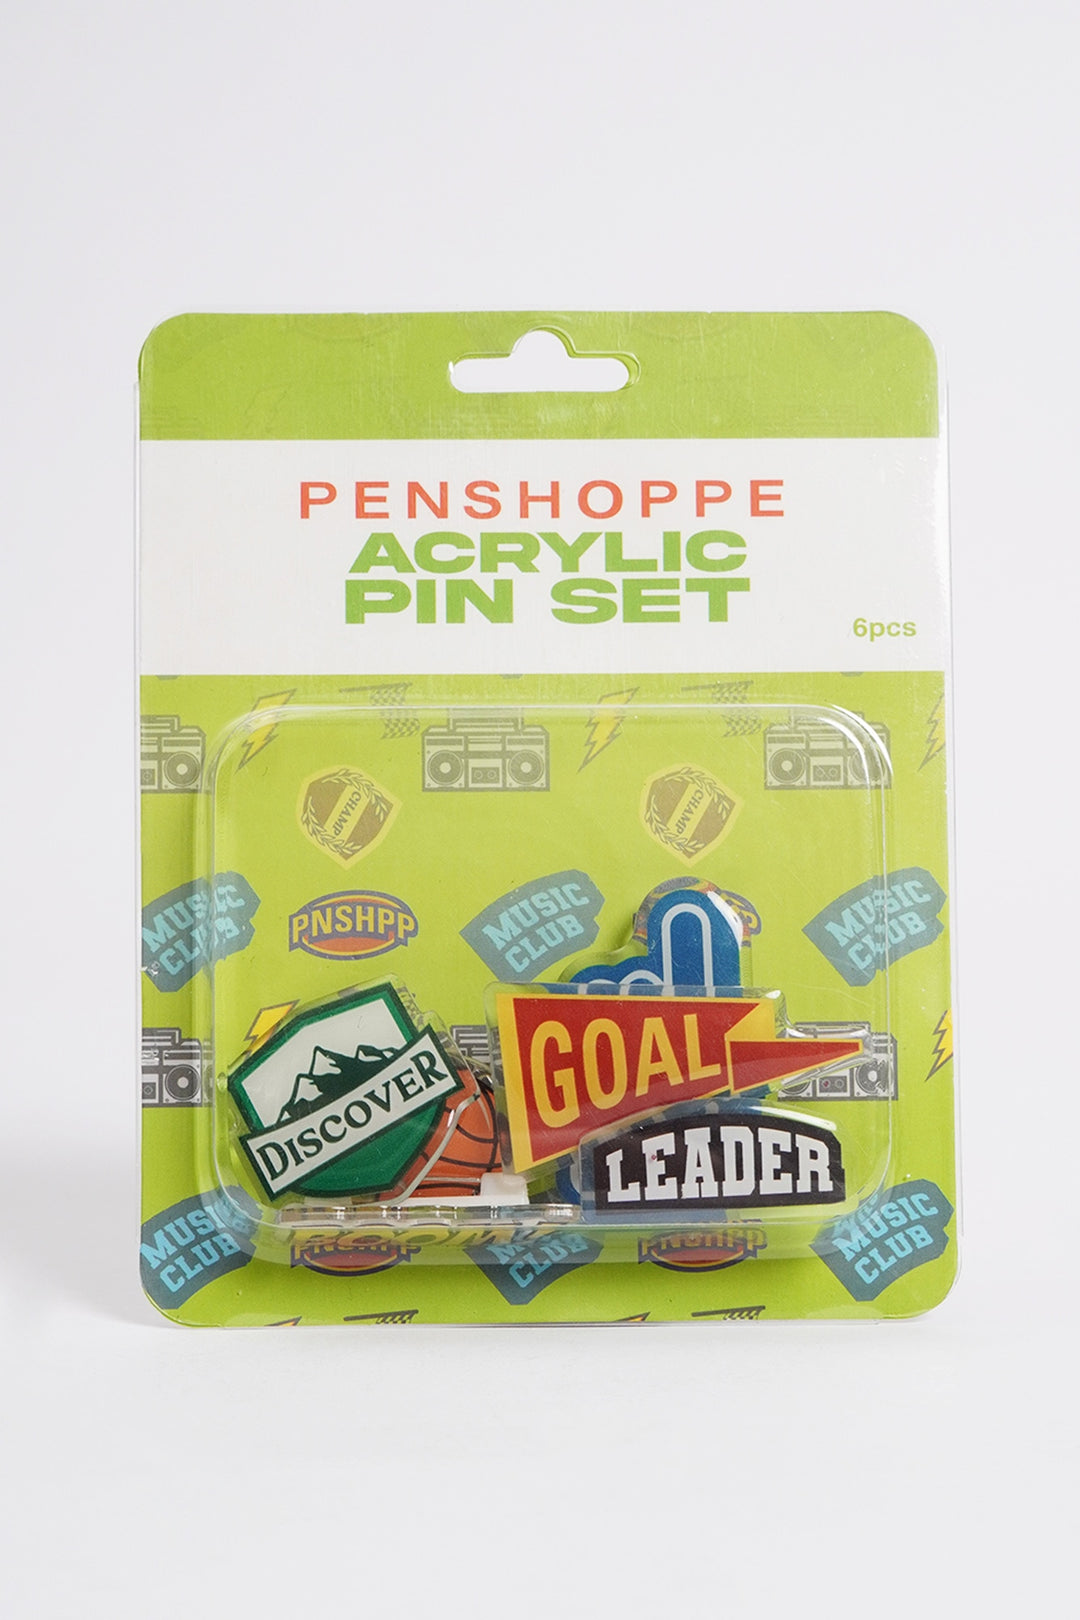 Acrylic Pin Sets